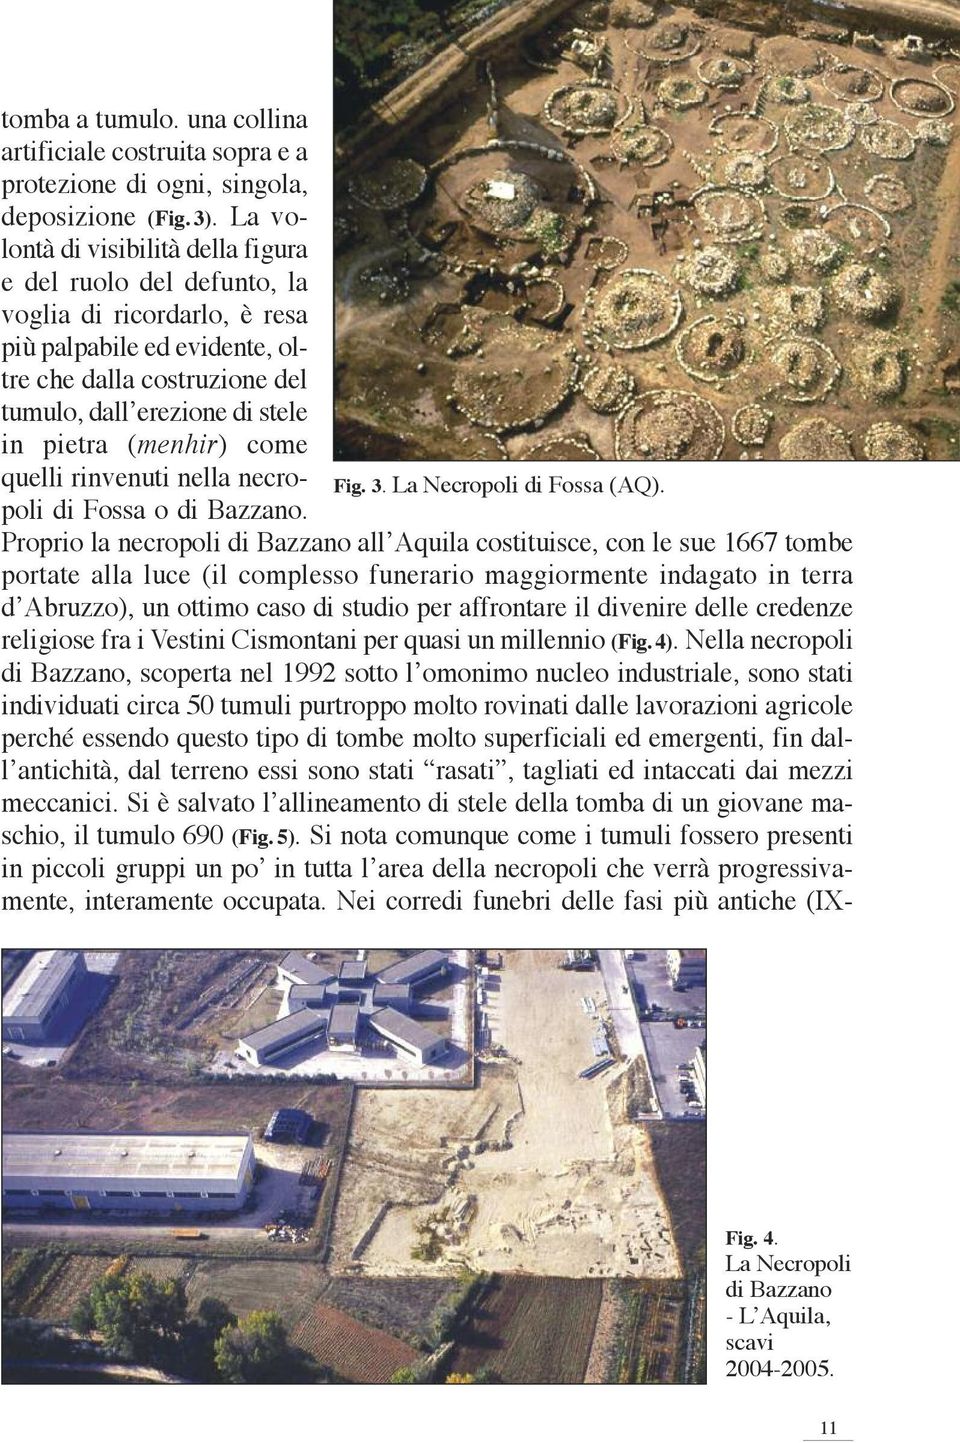 (menhir) come quel li rinvenuti nella necropoli di Fos sa o di Bazzano. Fig. 3. La Necropoli di Fossa (AQ).